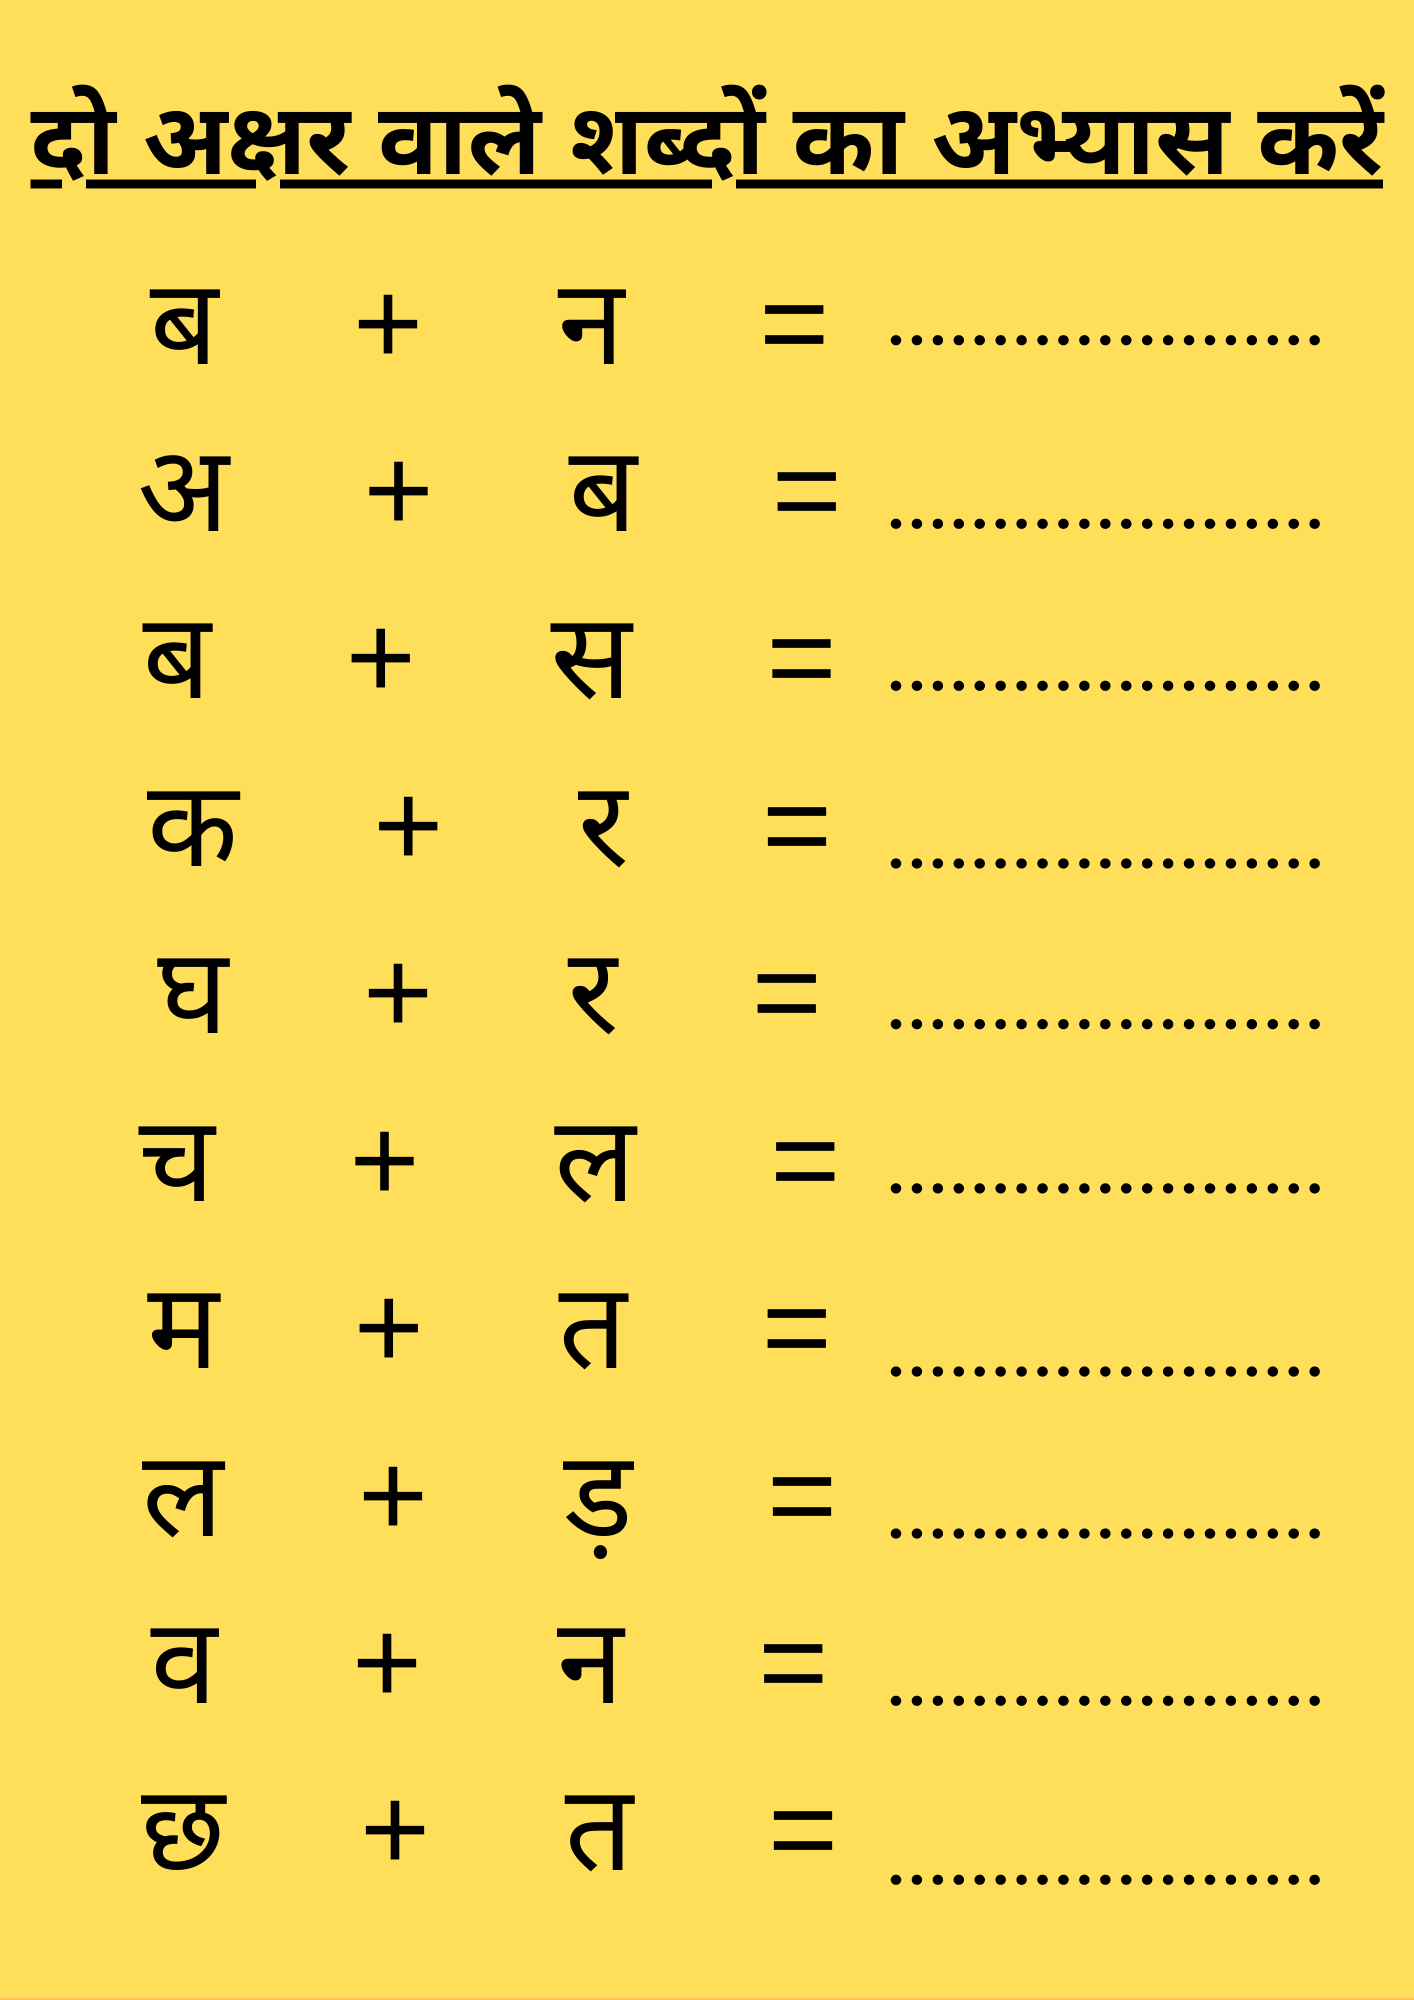 दो अक्षर वाले शब्दों का अभ्यास करें | Do Akshar Wale Sabd | Hindi Worksheet